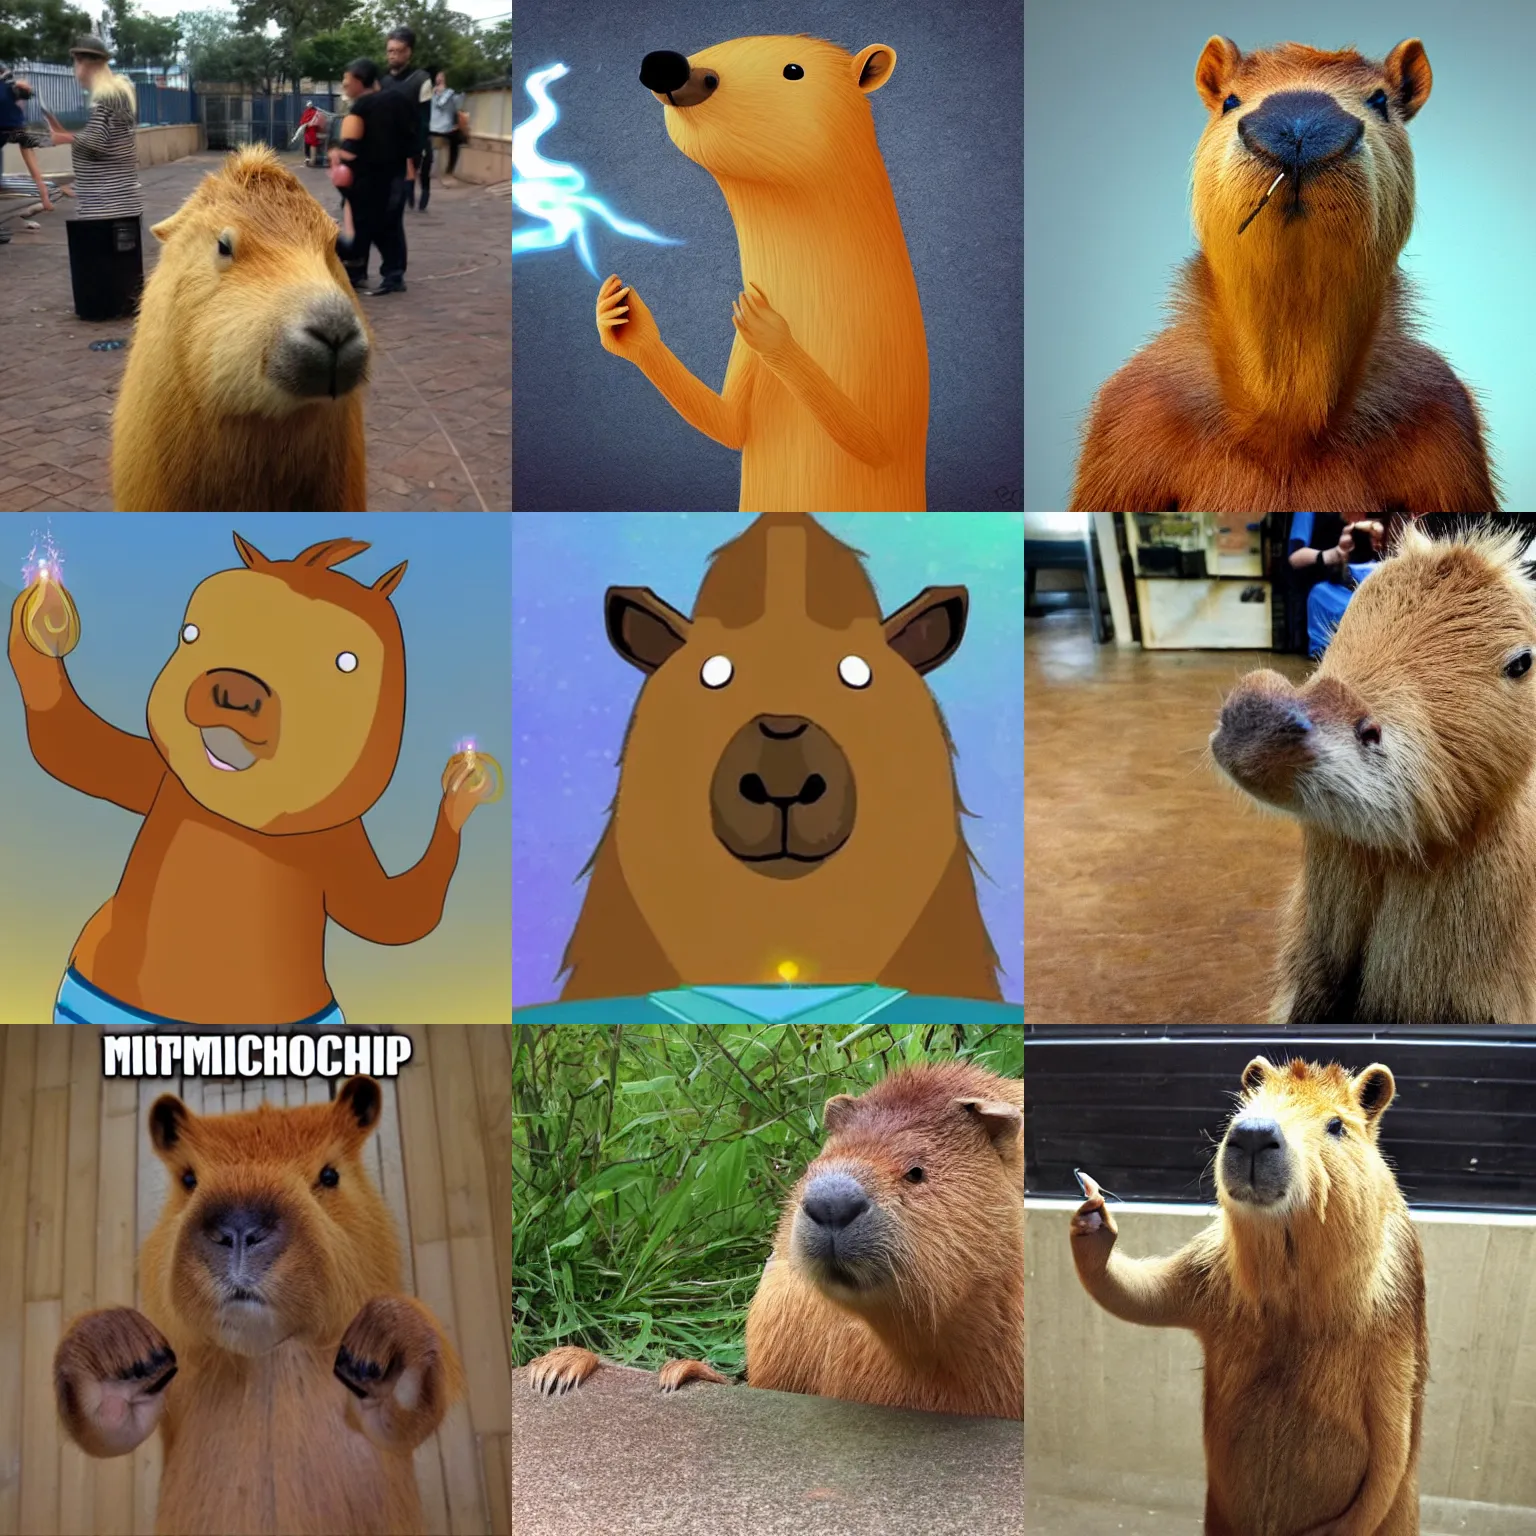 Prompt: Anthropomorphic capybara doing magic